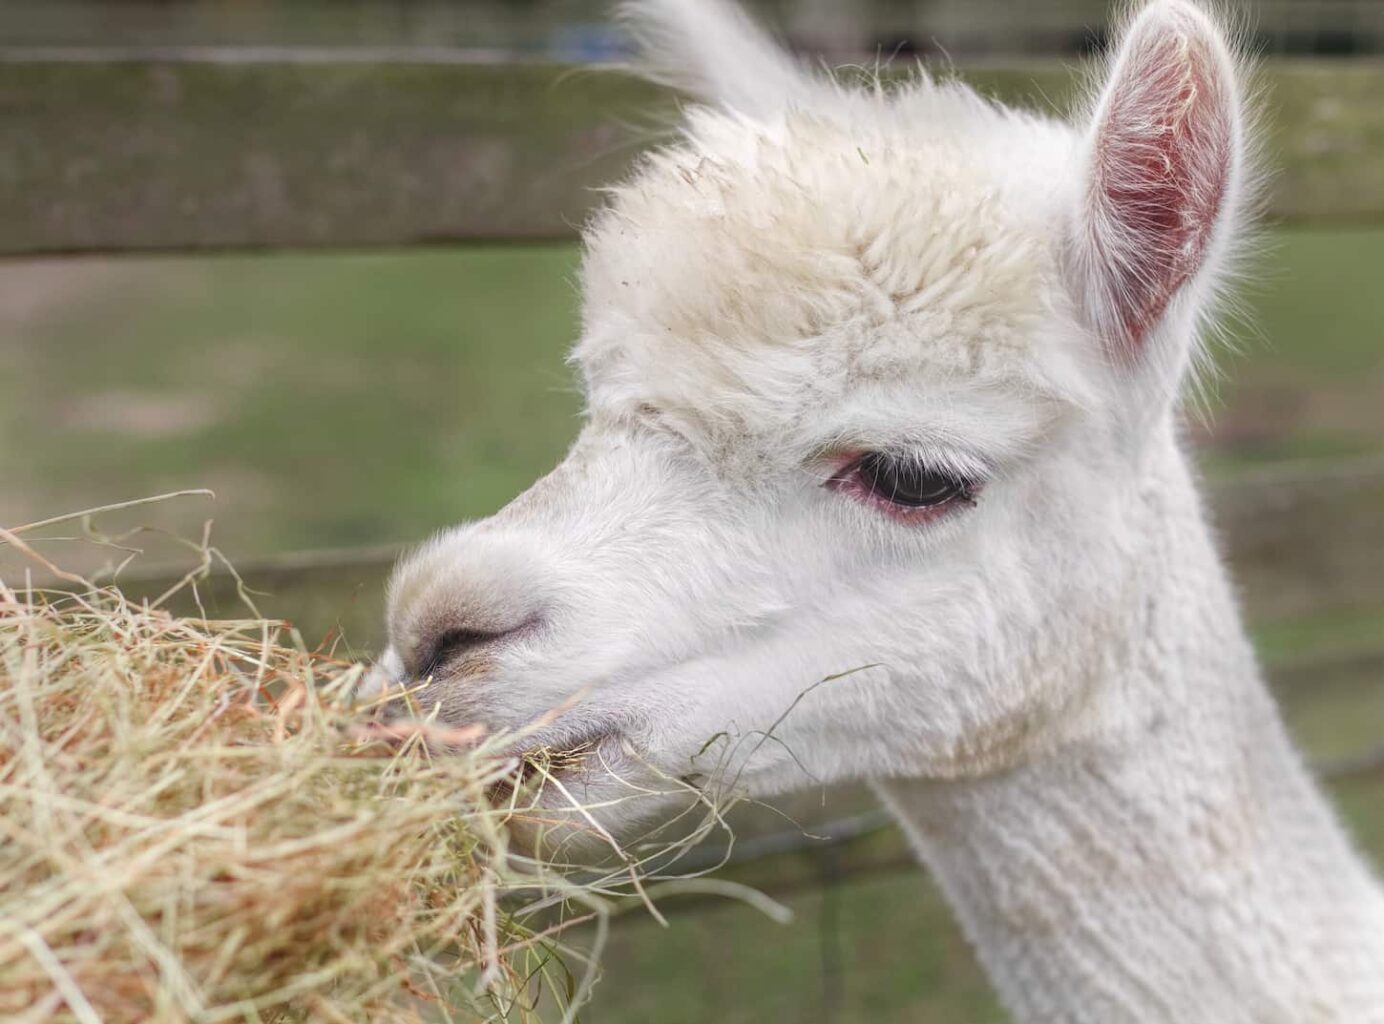 An image of a white llama eating alfalfa hay.